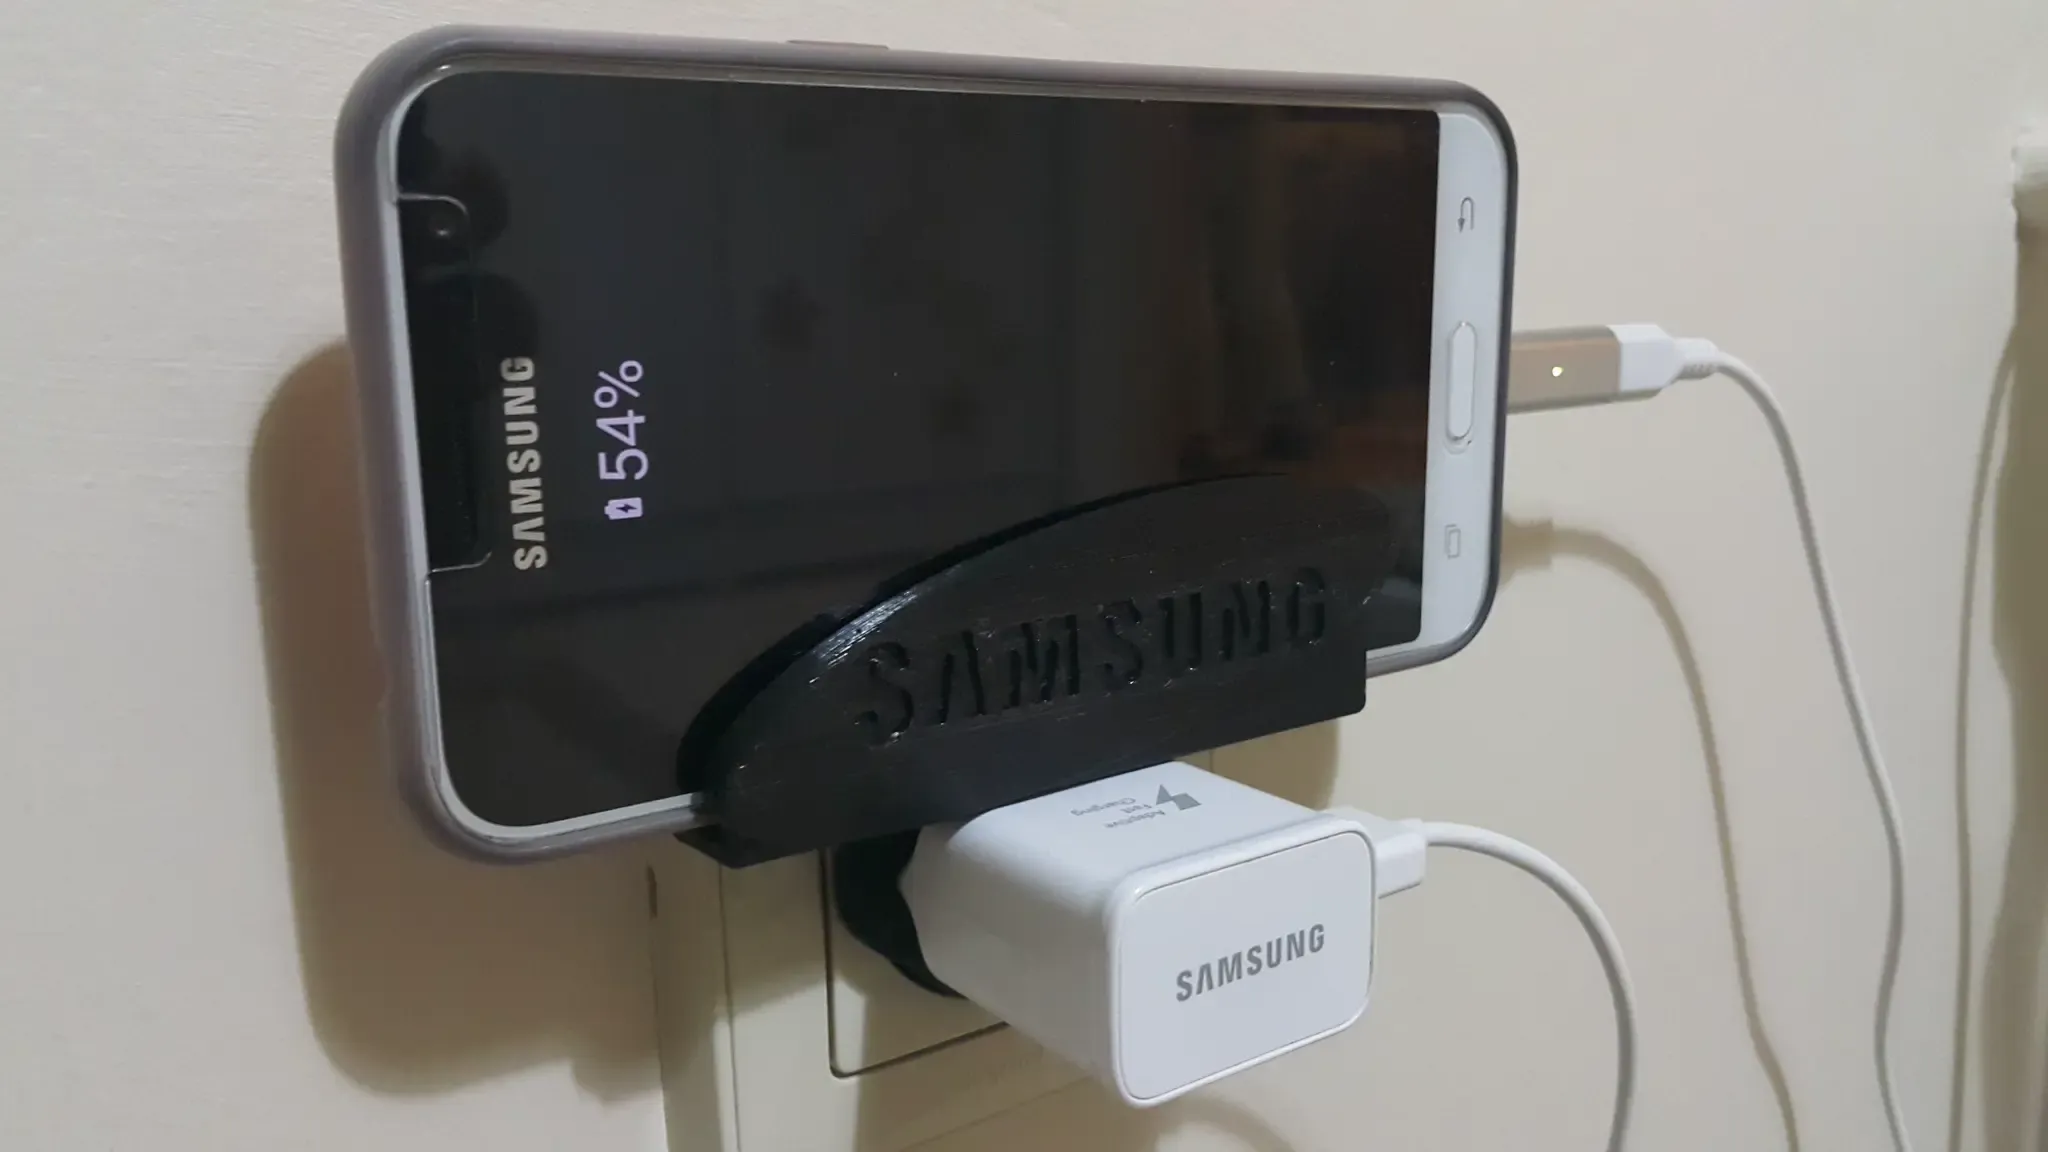 SAMSUNG EU Socket Phone Charger Holder